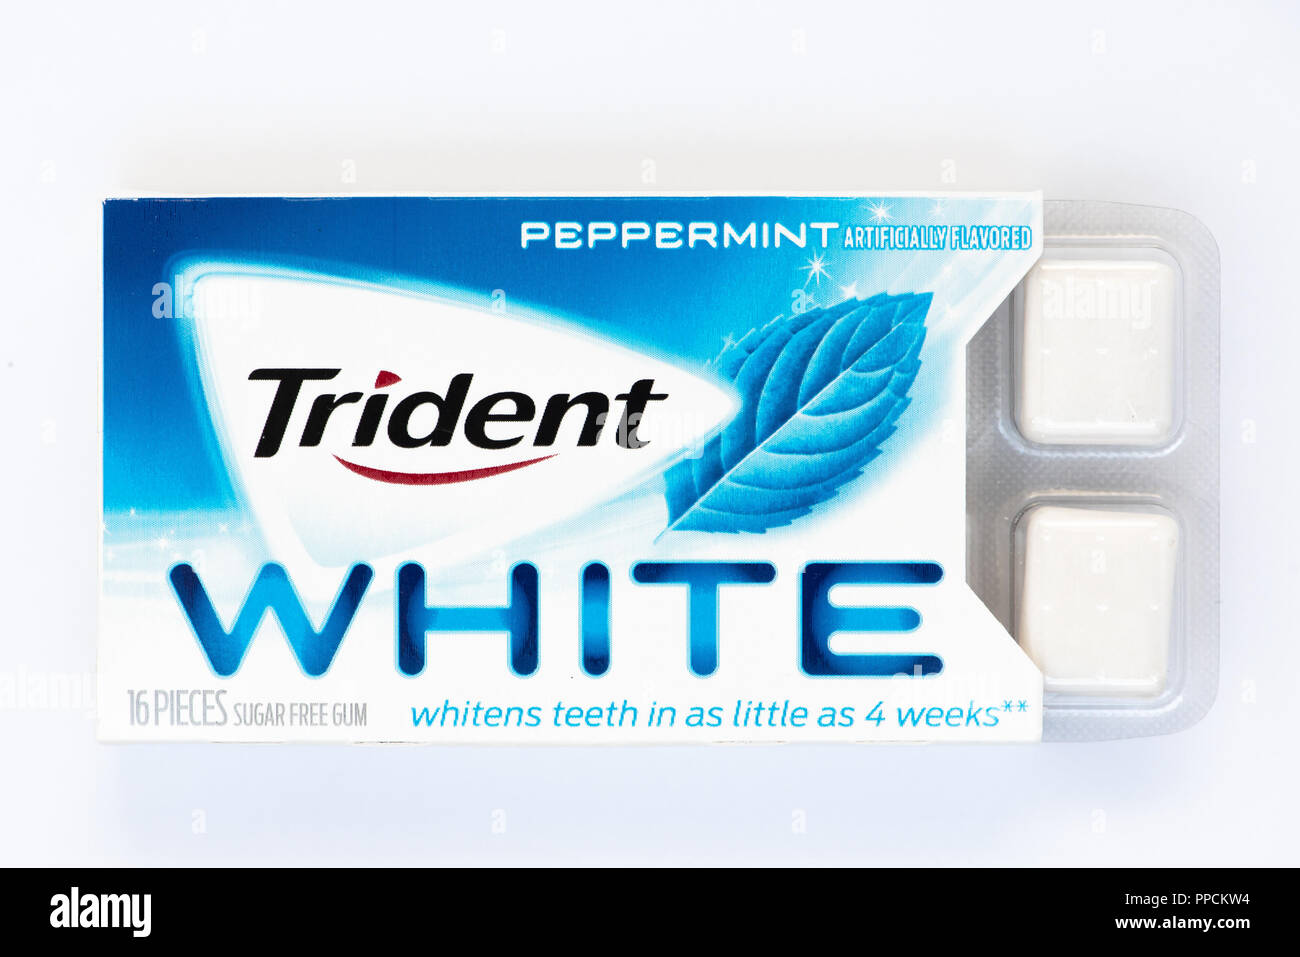 Un paquet de Trident menthe chewing-gum sans sucre blanc prétendant pour blanchir les dents en aussi peu que 4 semaines. Banque D'Images